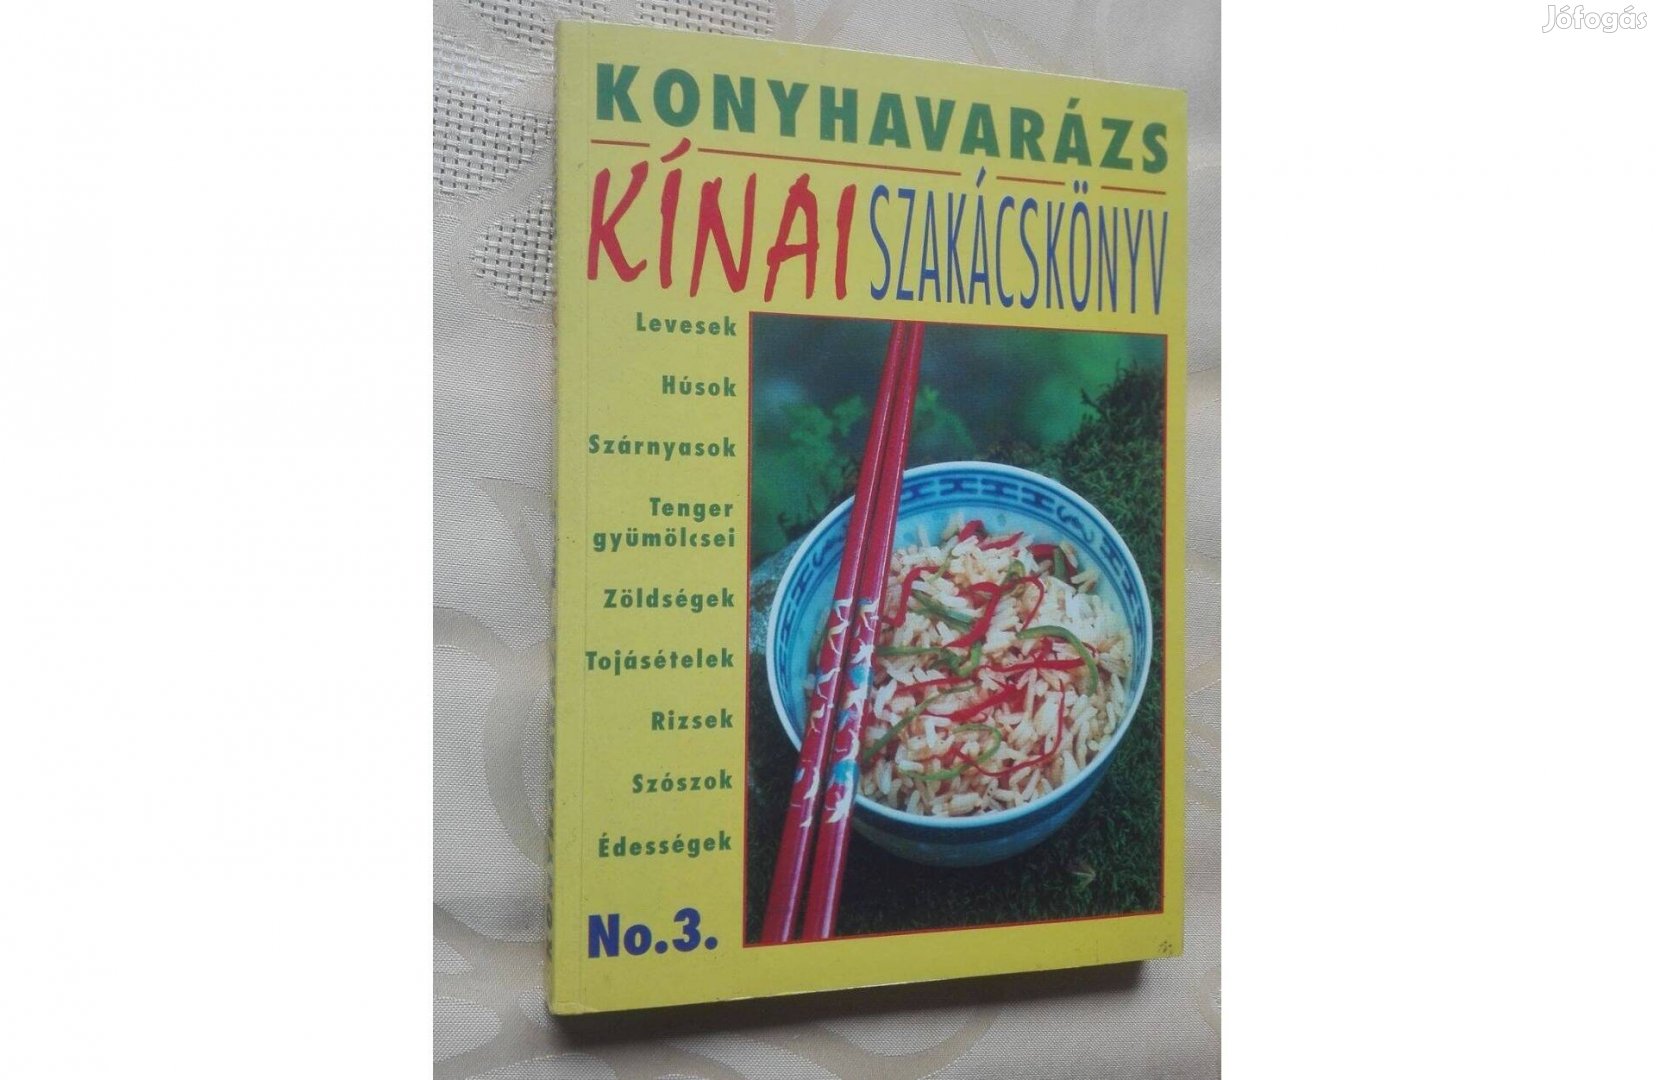 Kínai szakácskönyv, Konyhavarázs sorozat, vadonatúj,olvasatlan